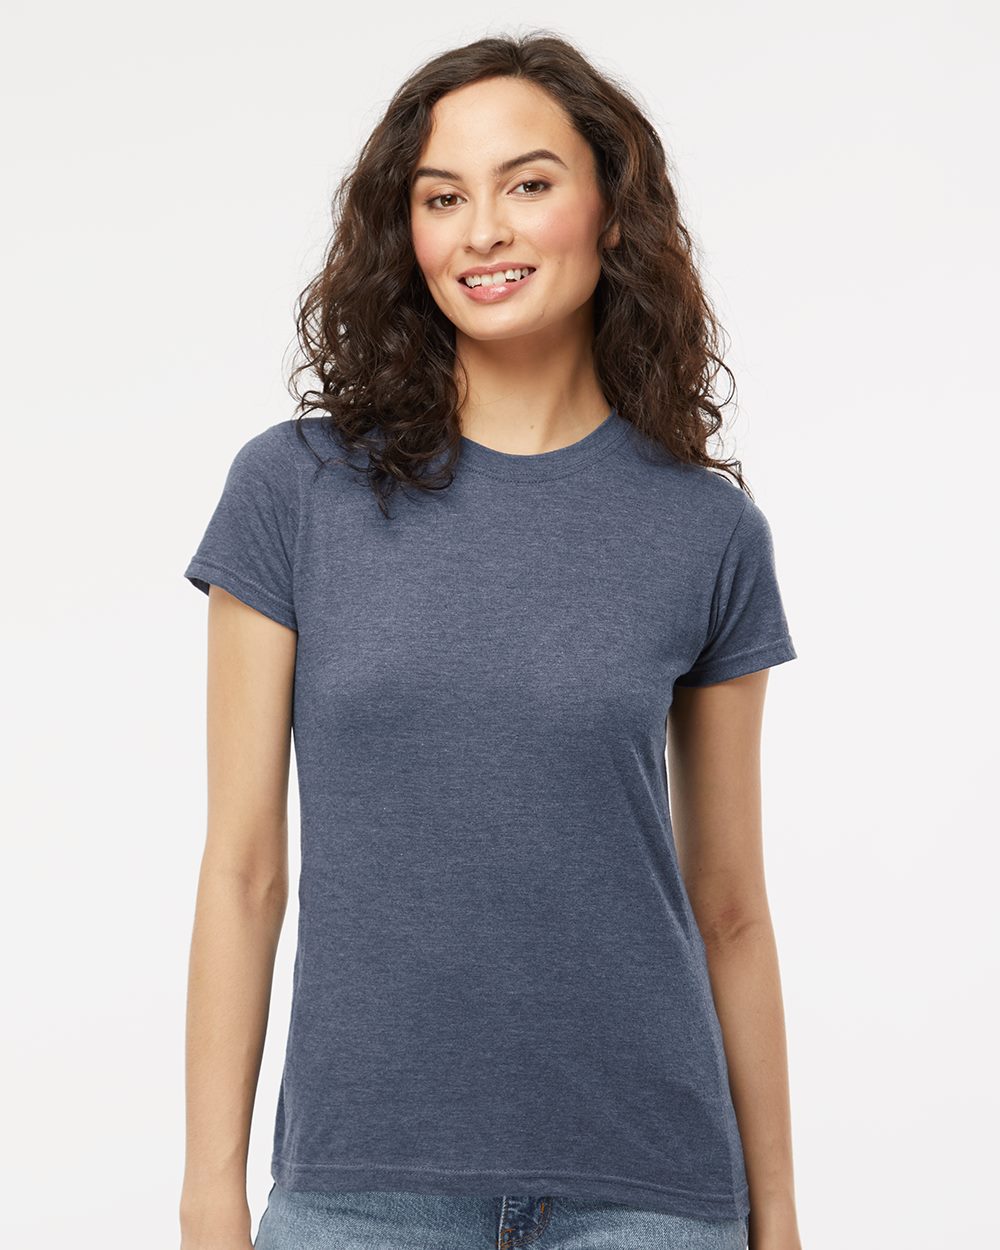 Women's Fine Jersey T-Shirt - 4513